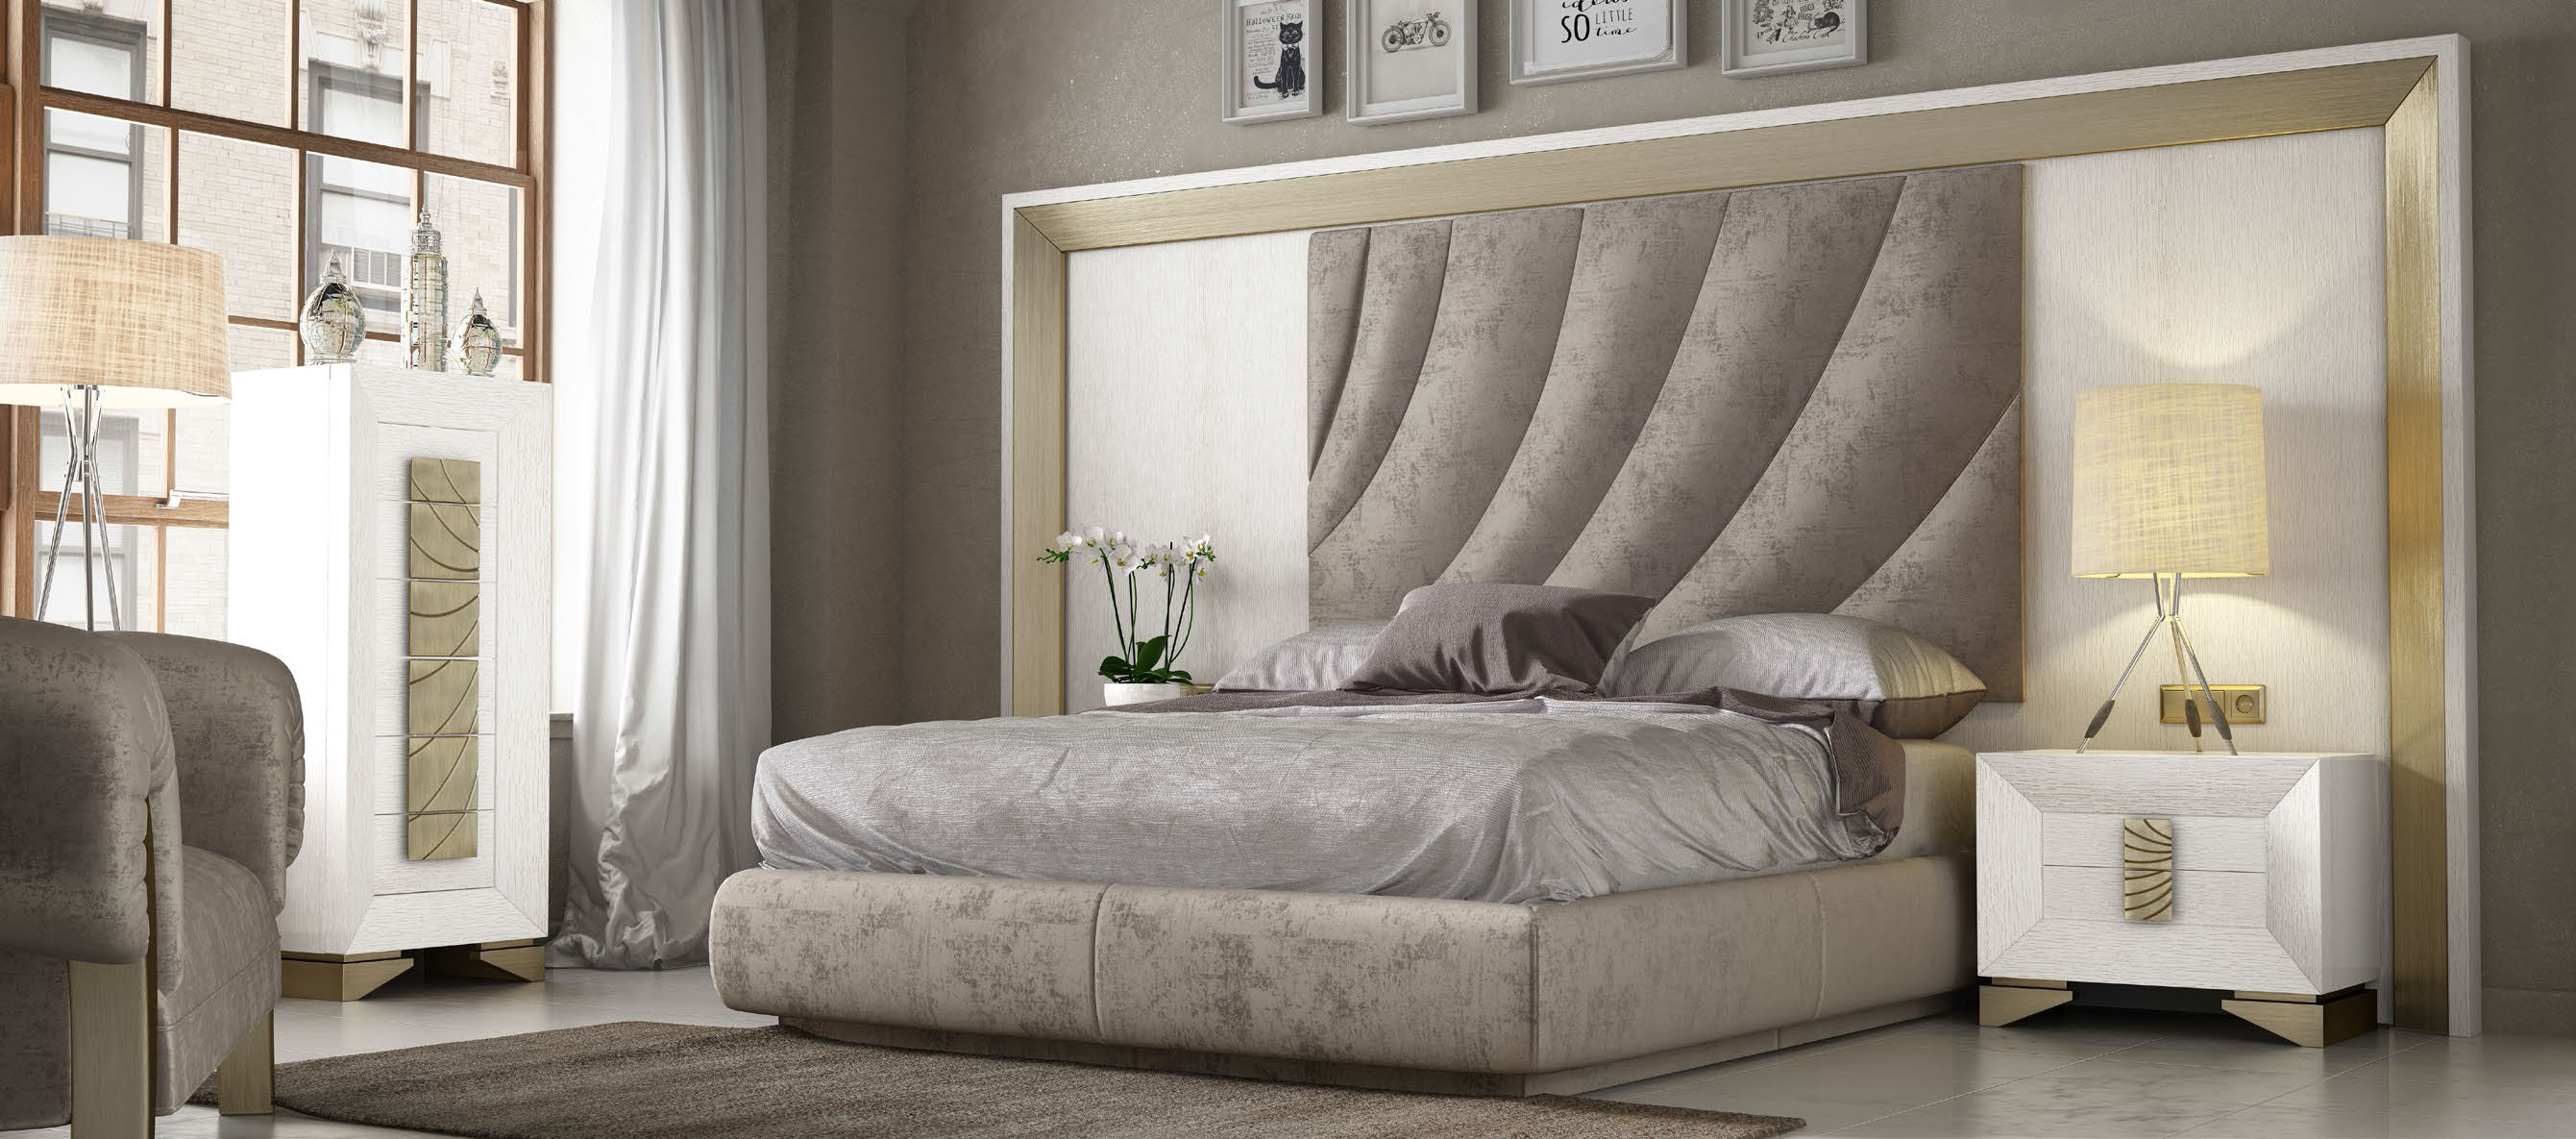 Brands Franco Furniture Avanty Bedrooms, Spain DOR 128